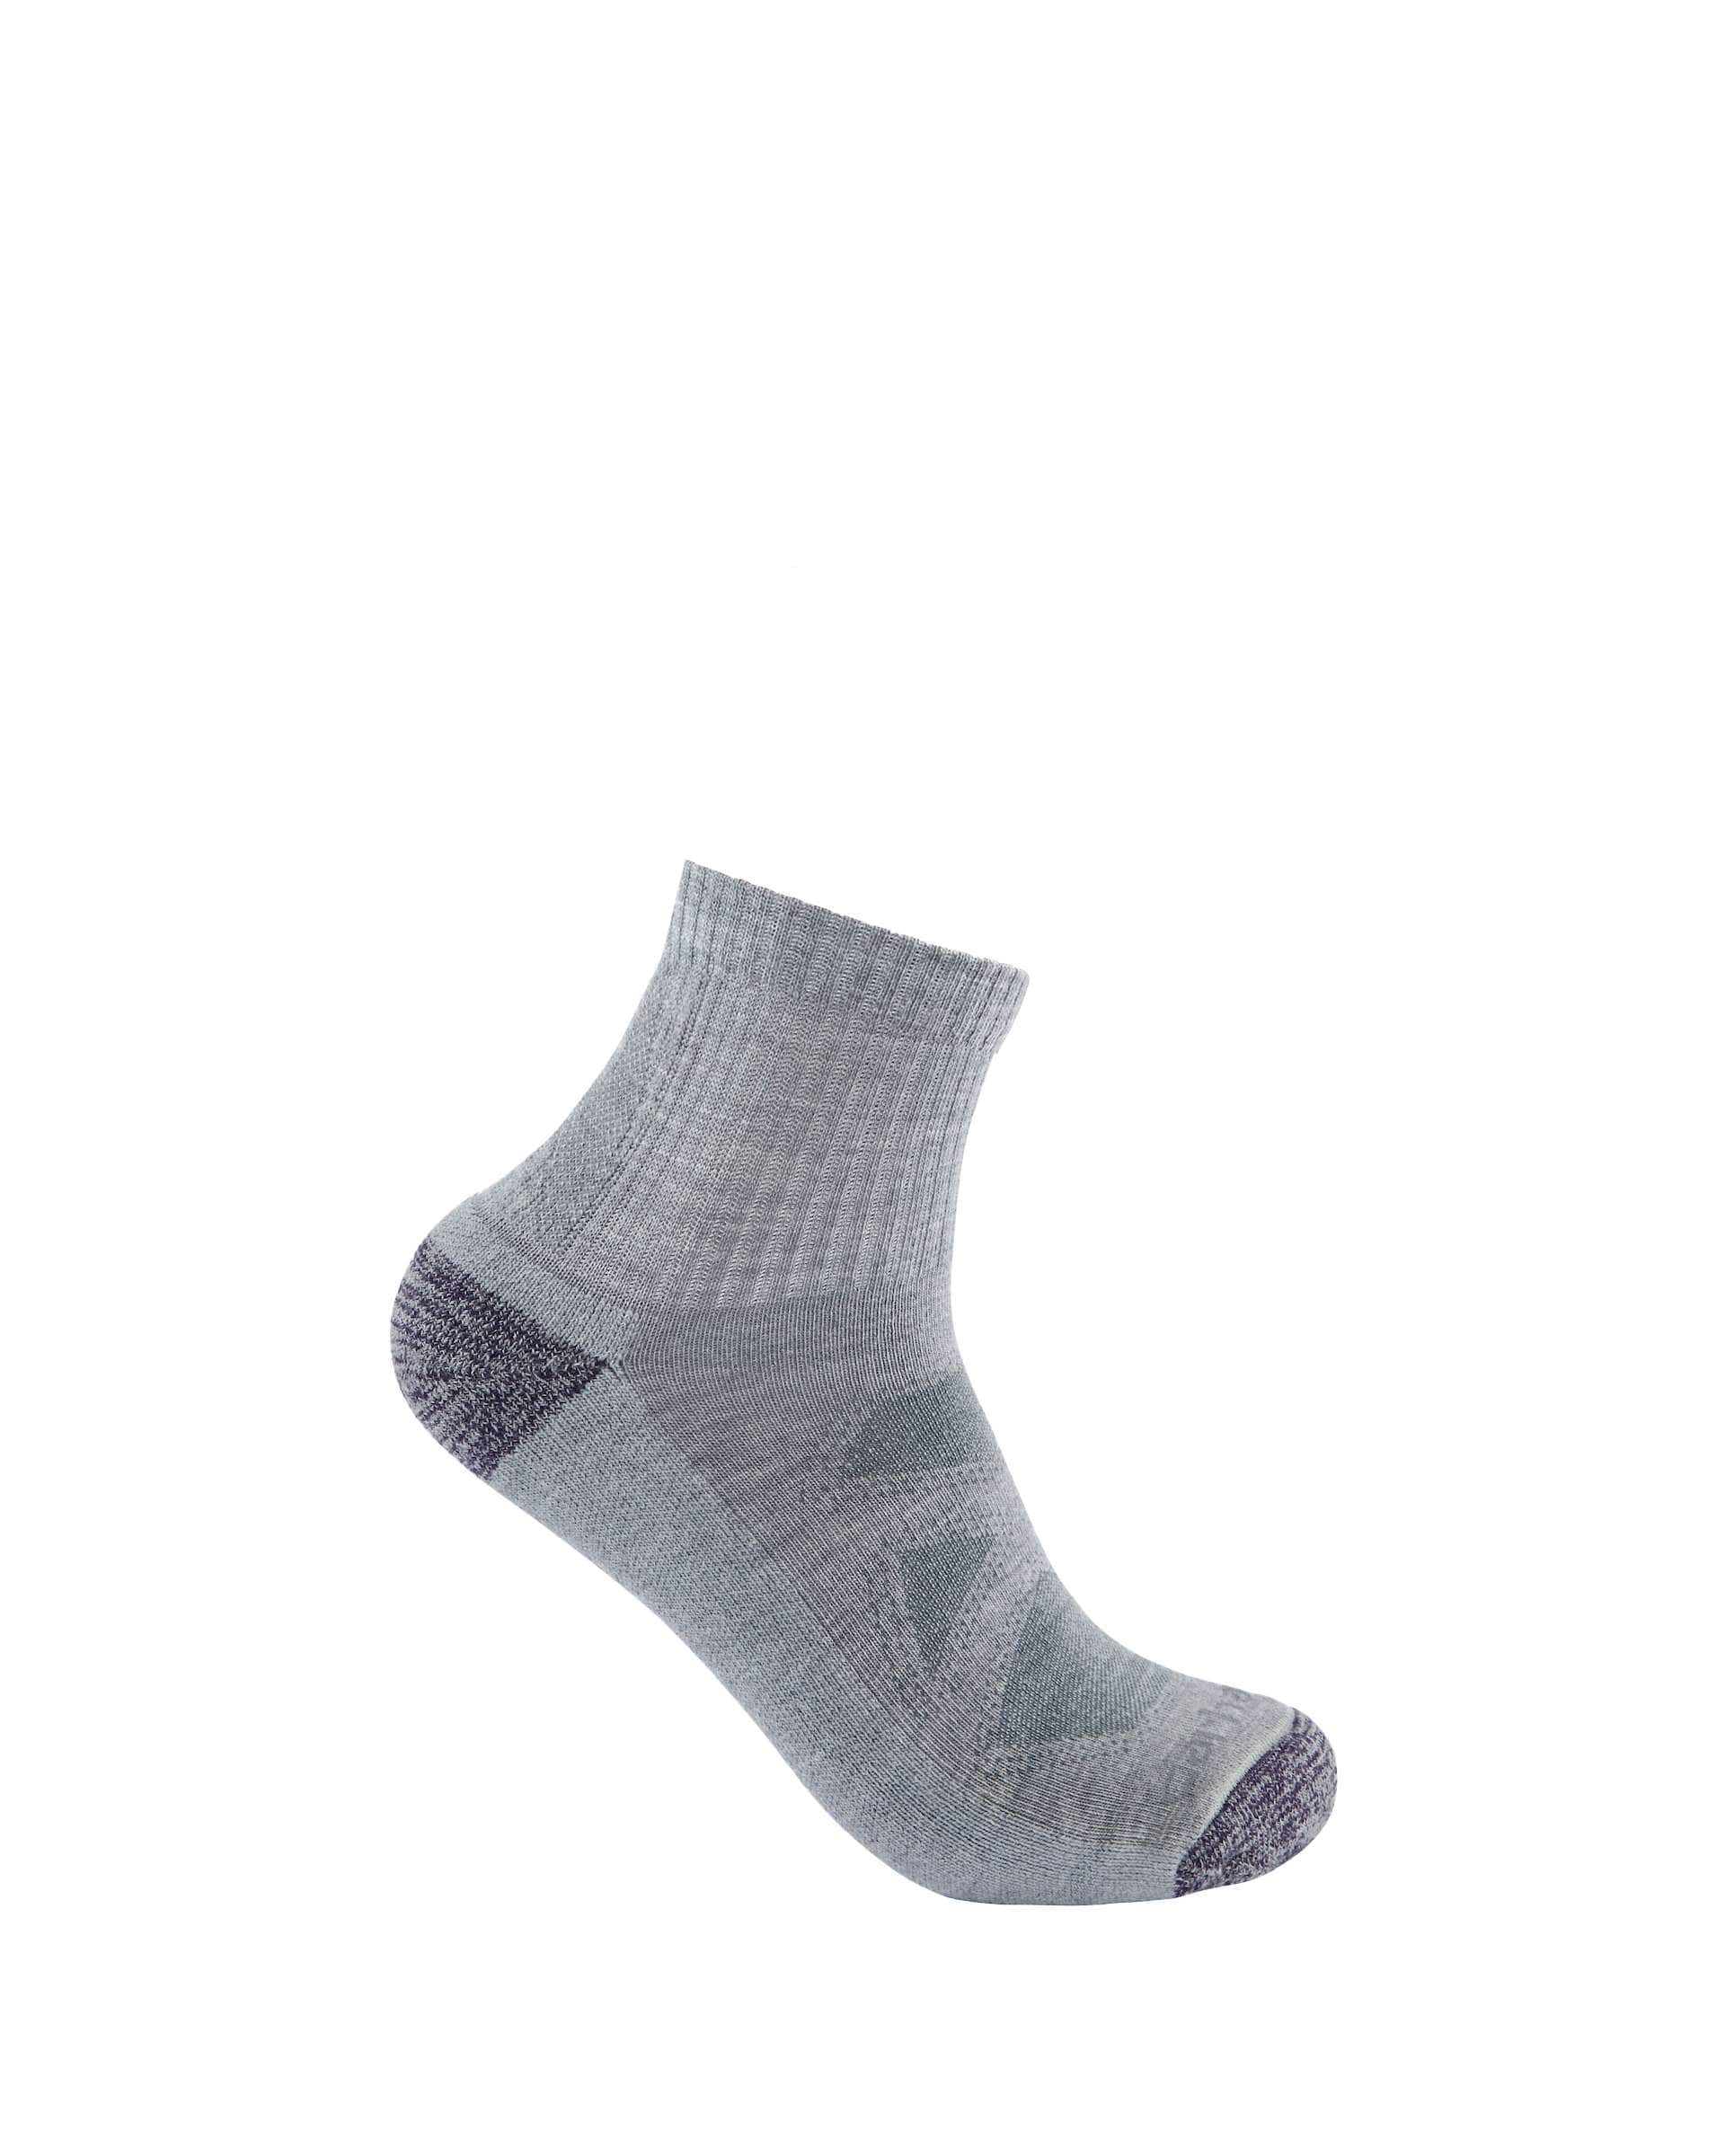 Women's Midweight Merino Wool Blend Quarter Sock